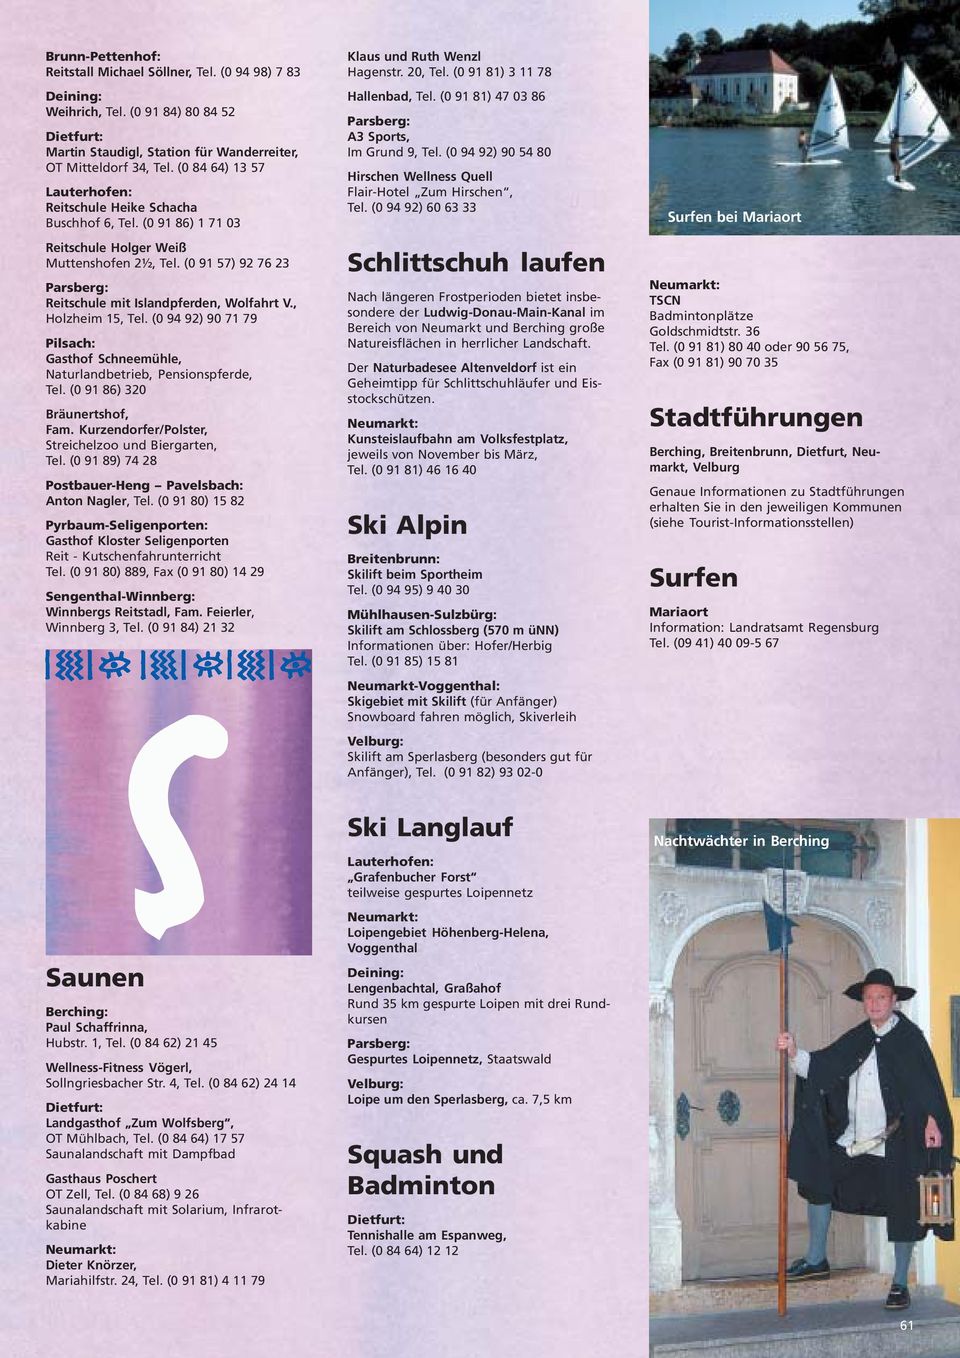 (0 94 92) 90 71 79 Pilsach: Gasthof Schneemühle, Naturlandbetrieb, Pensionspferde, Tel. (0 91 86) 320 Bräunertshof, Fam. Kurzendorfer/Polster, Streichelzoo und Biergarten, Tel.